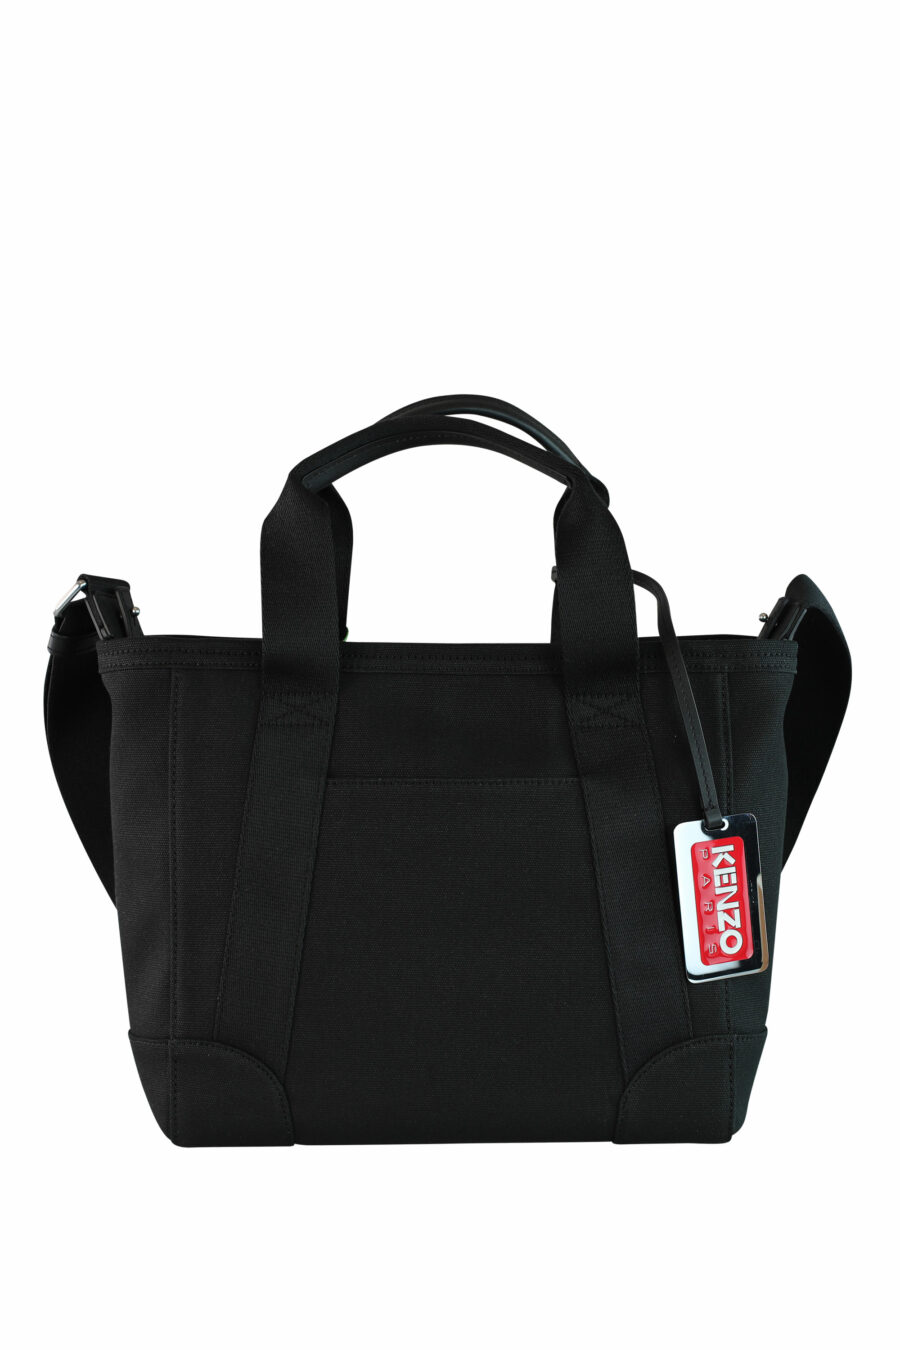 Tote bag bandolera negro con logo "paris" - IMG 1057